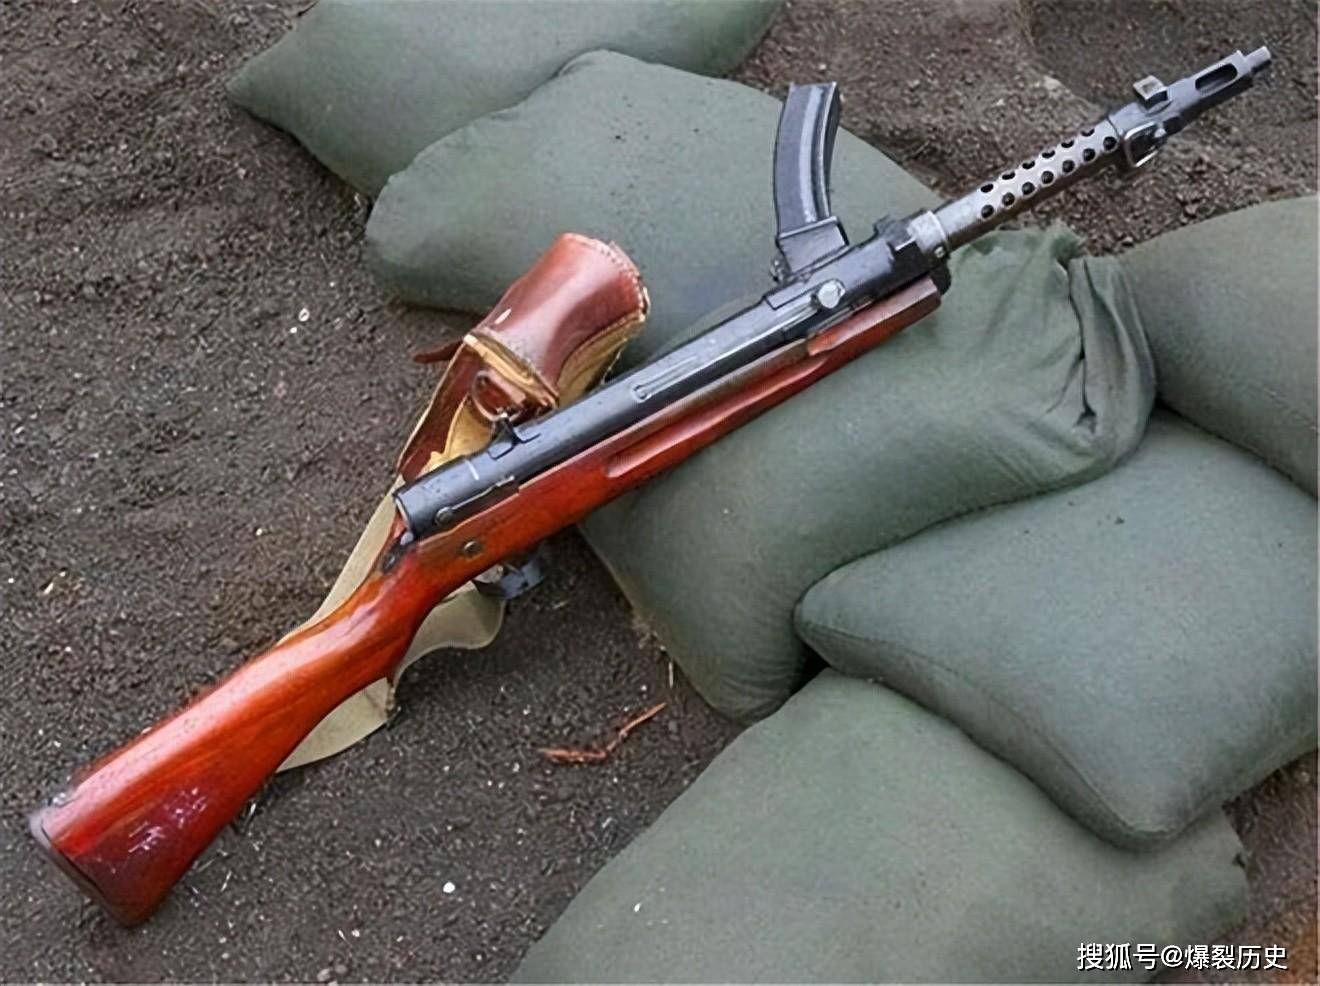 抗战日军武器——冲锋枪篇,让日本人心疼又肉疼的奢侈装备